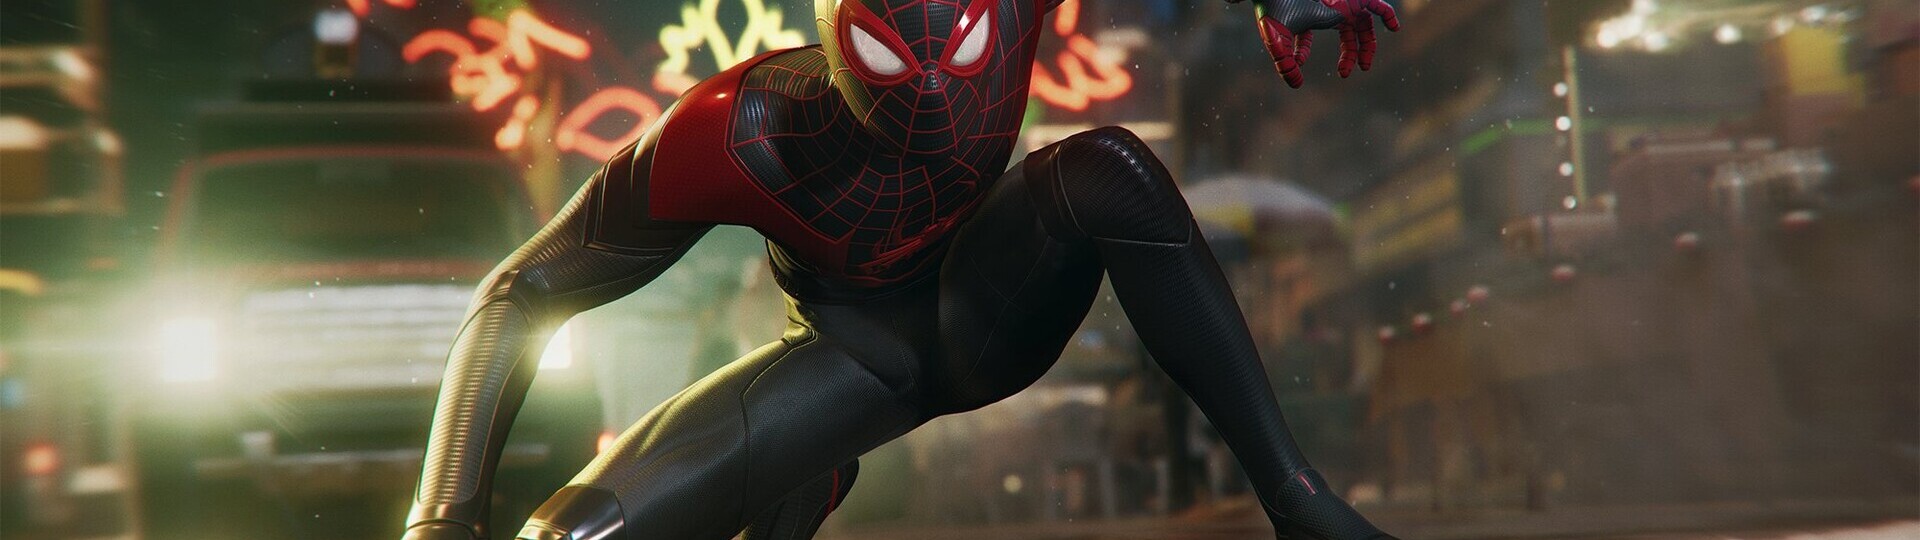 Insomniac Games v krátké animaci lákají na nového Spider-Mana | Novinky